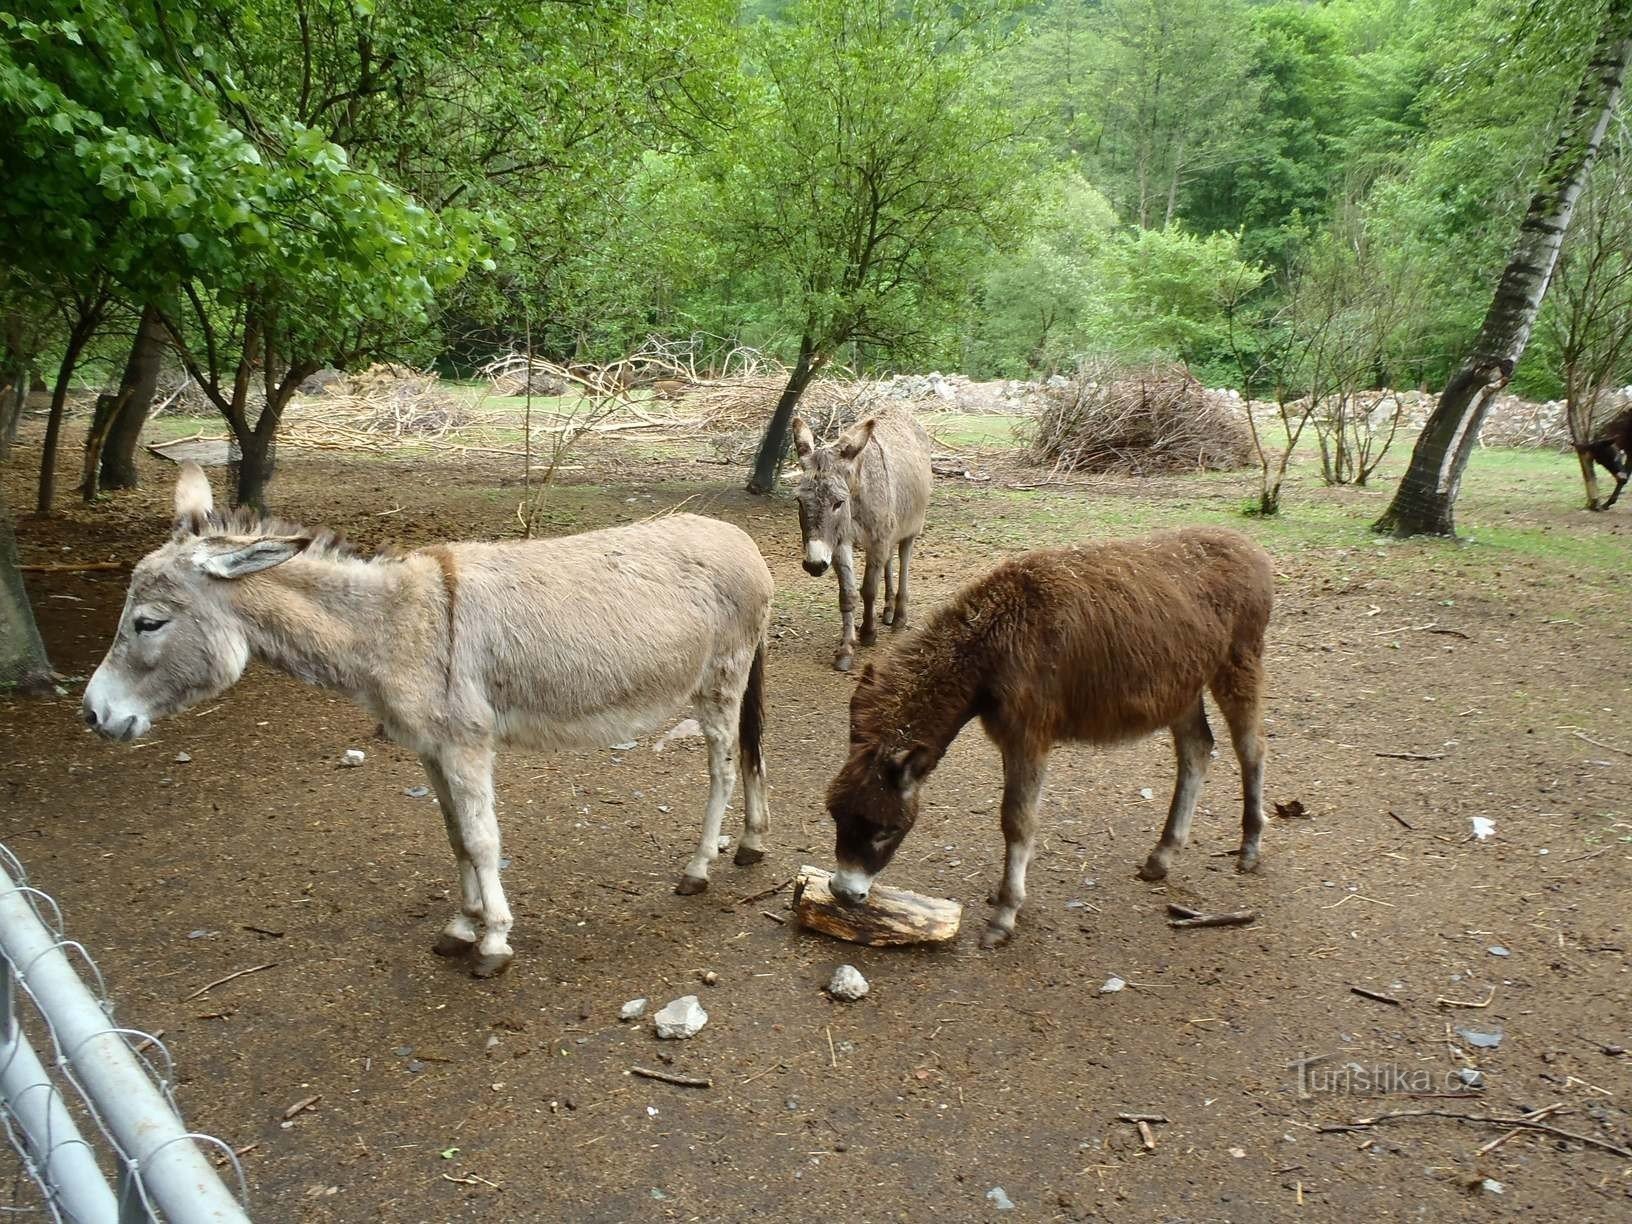 Donkey farm - 12.5.2012